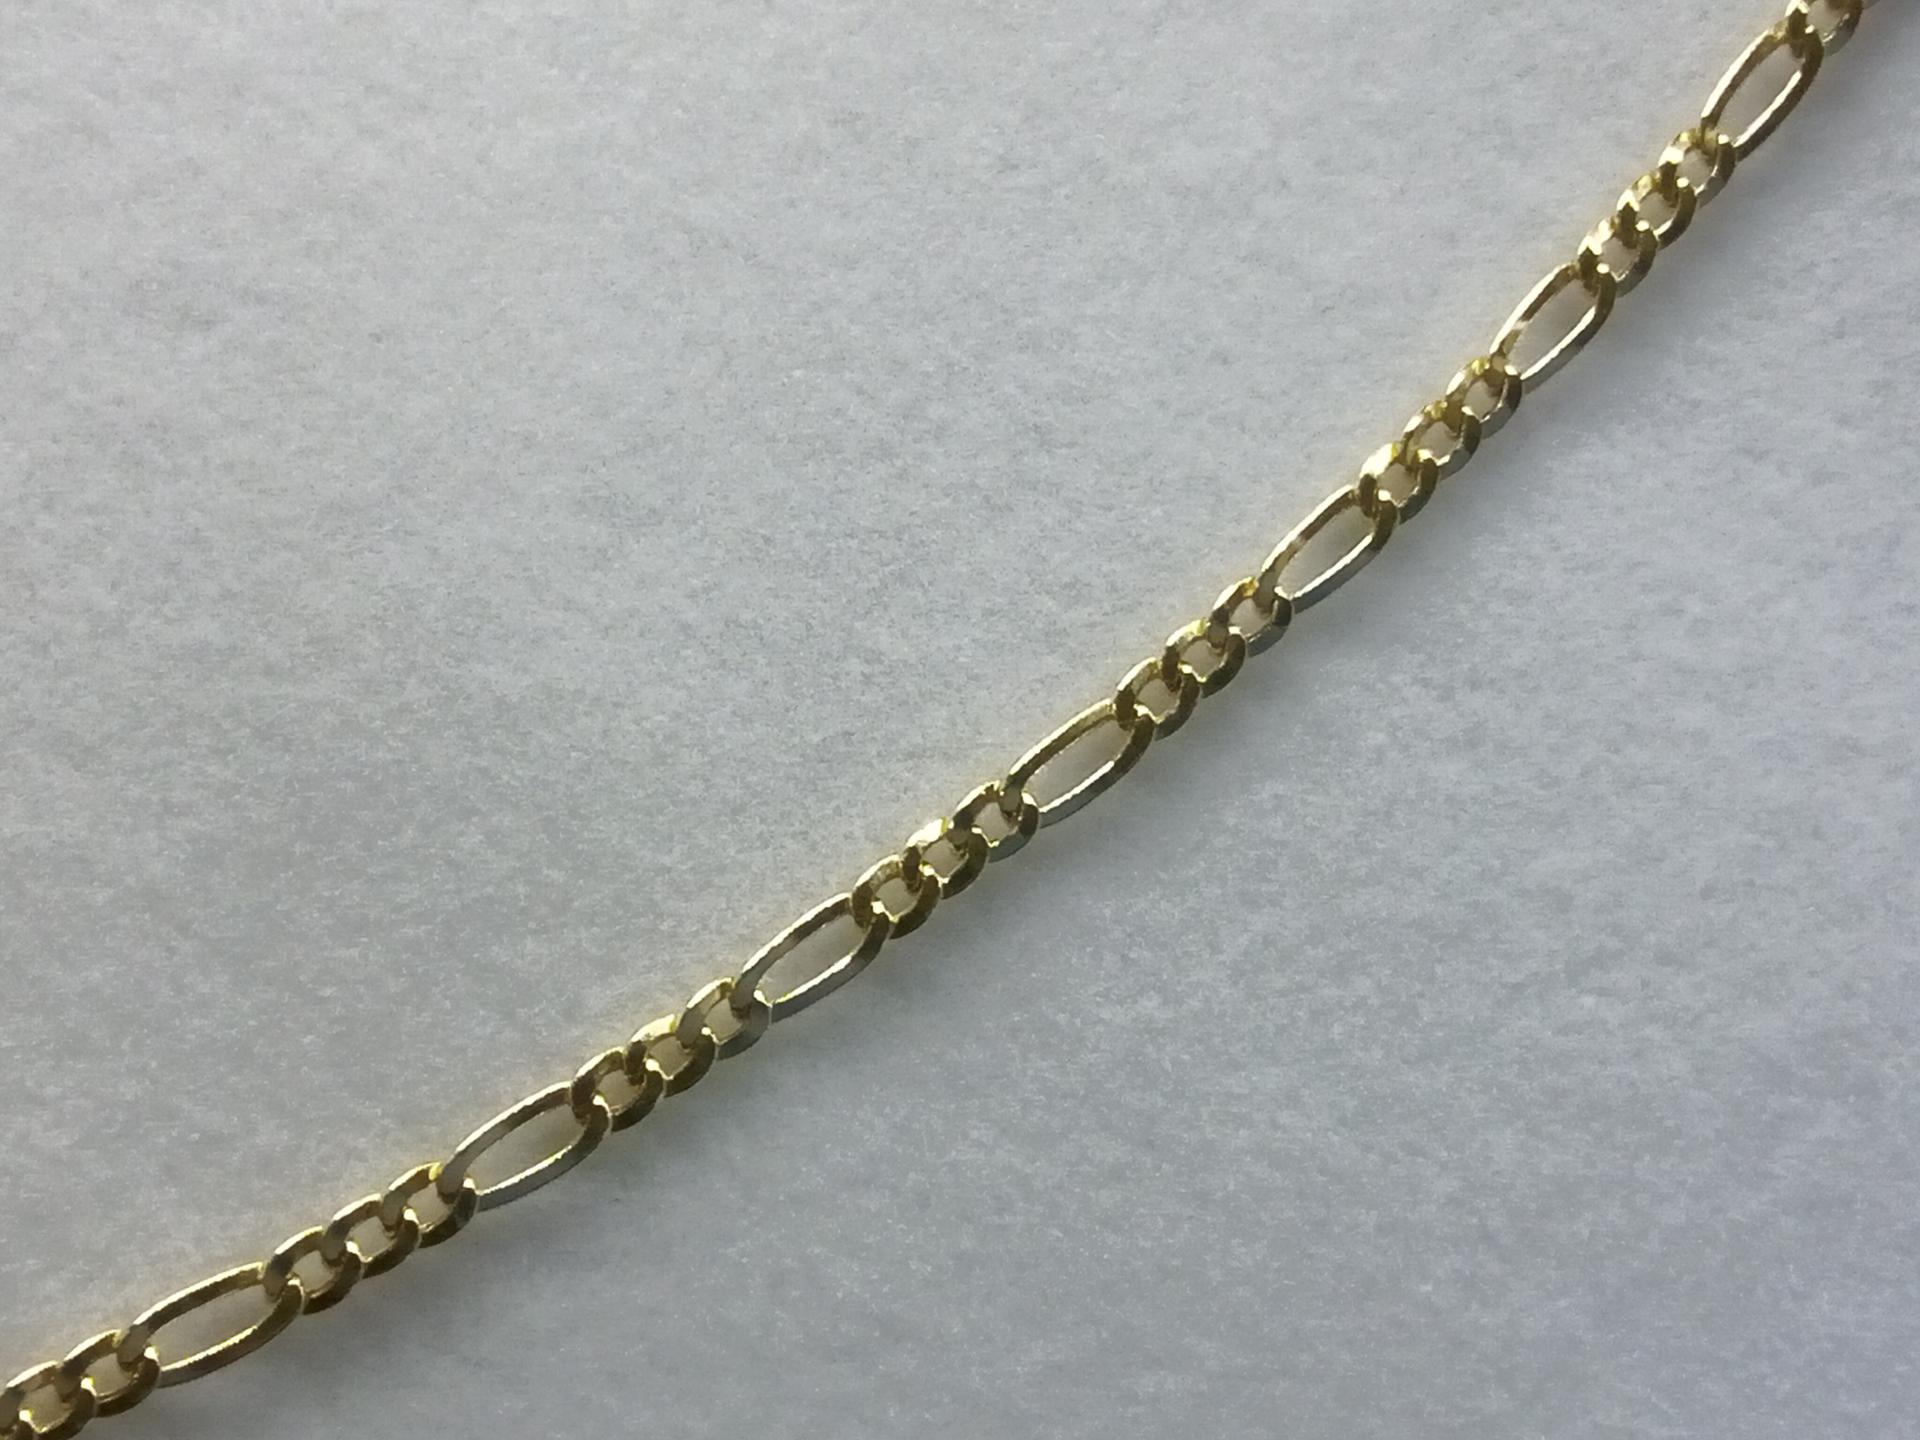 Cadena de Oro Amarillo 18K Estilo Cartier 50 cm con Mosquetón - Elegancia Unisex en Oferta